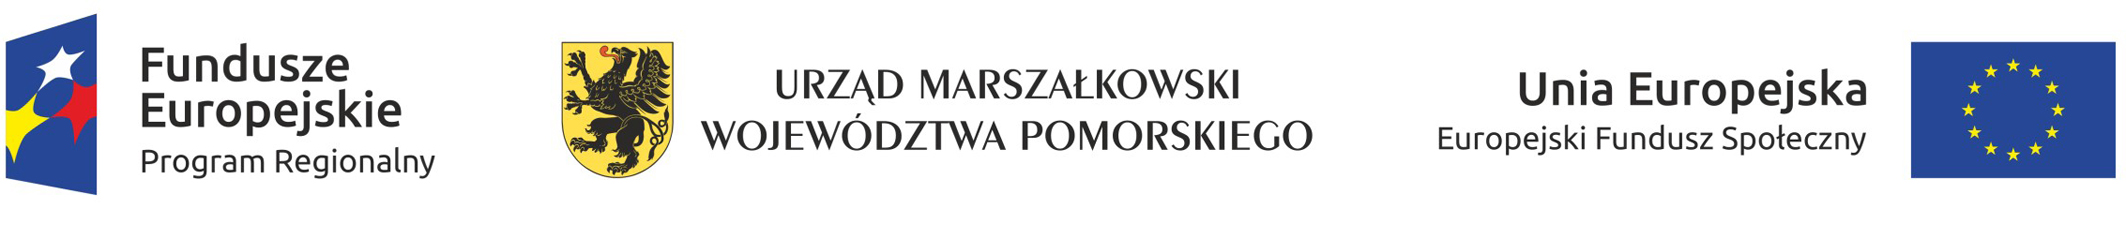 UE_Fundusze_UMarszałkowki